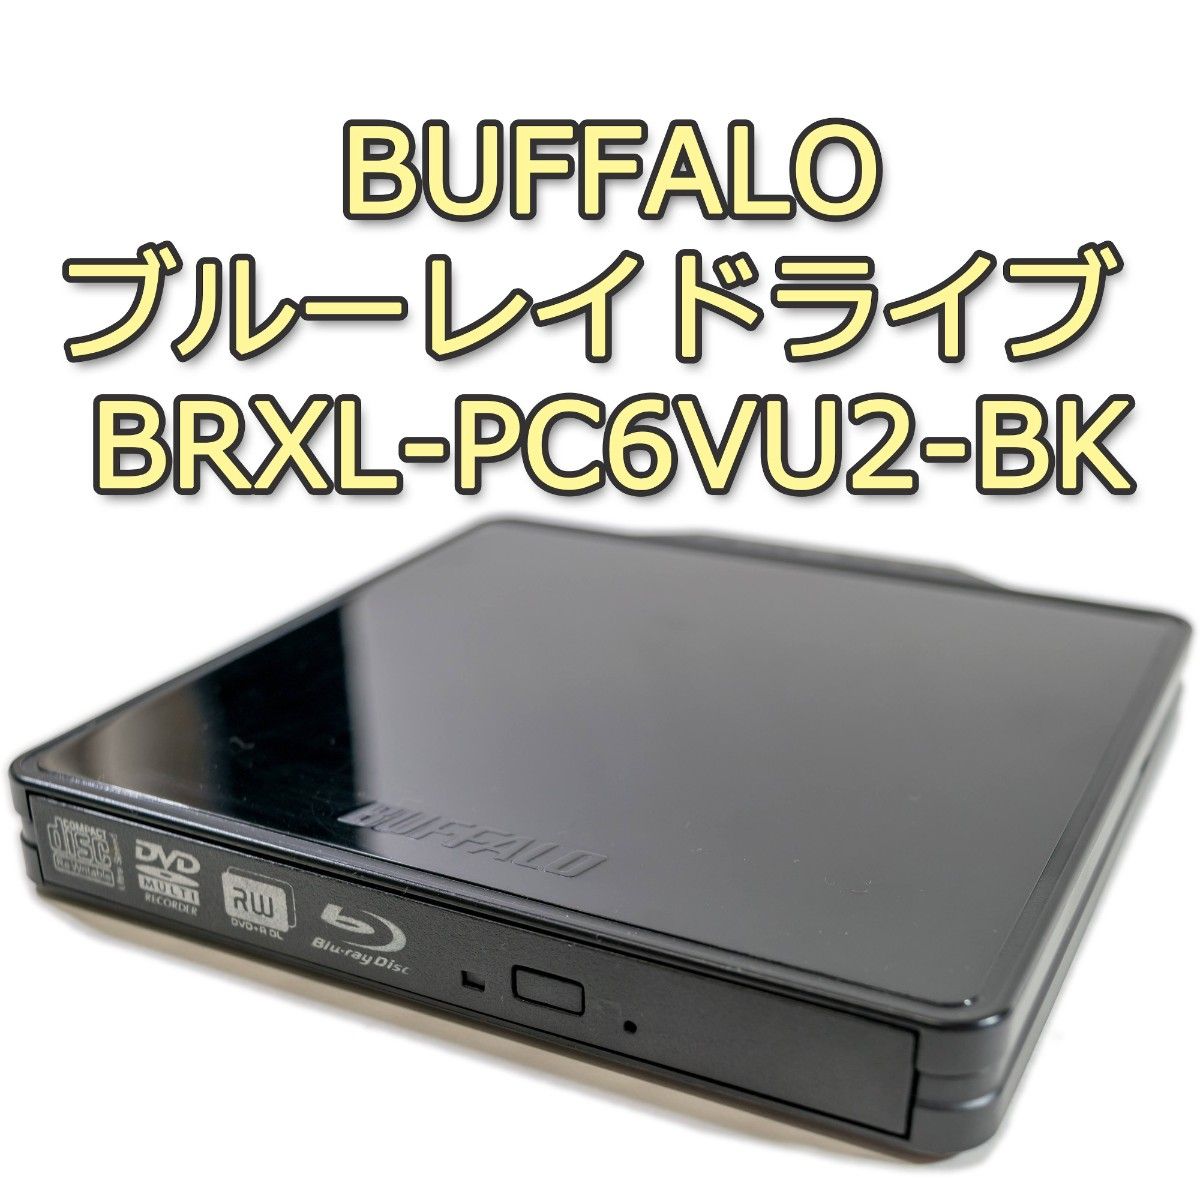 再生アプリ付き BUFFALO ポータブルブルーレイドライブ BRXL-PC6VU2-BK